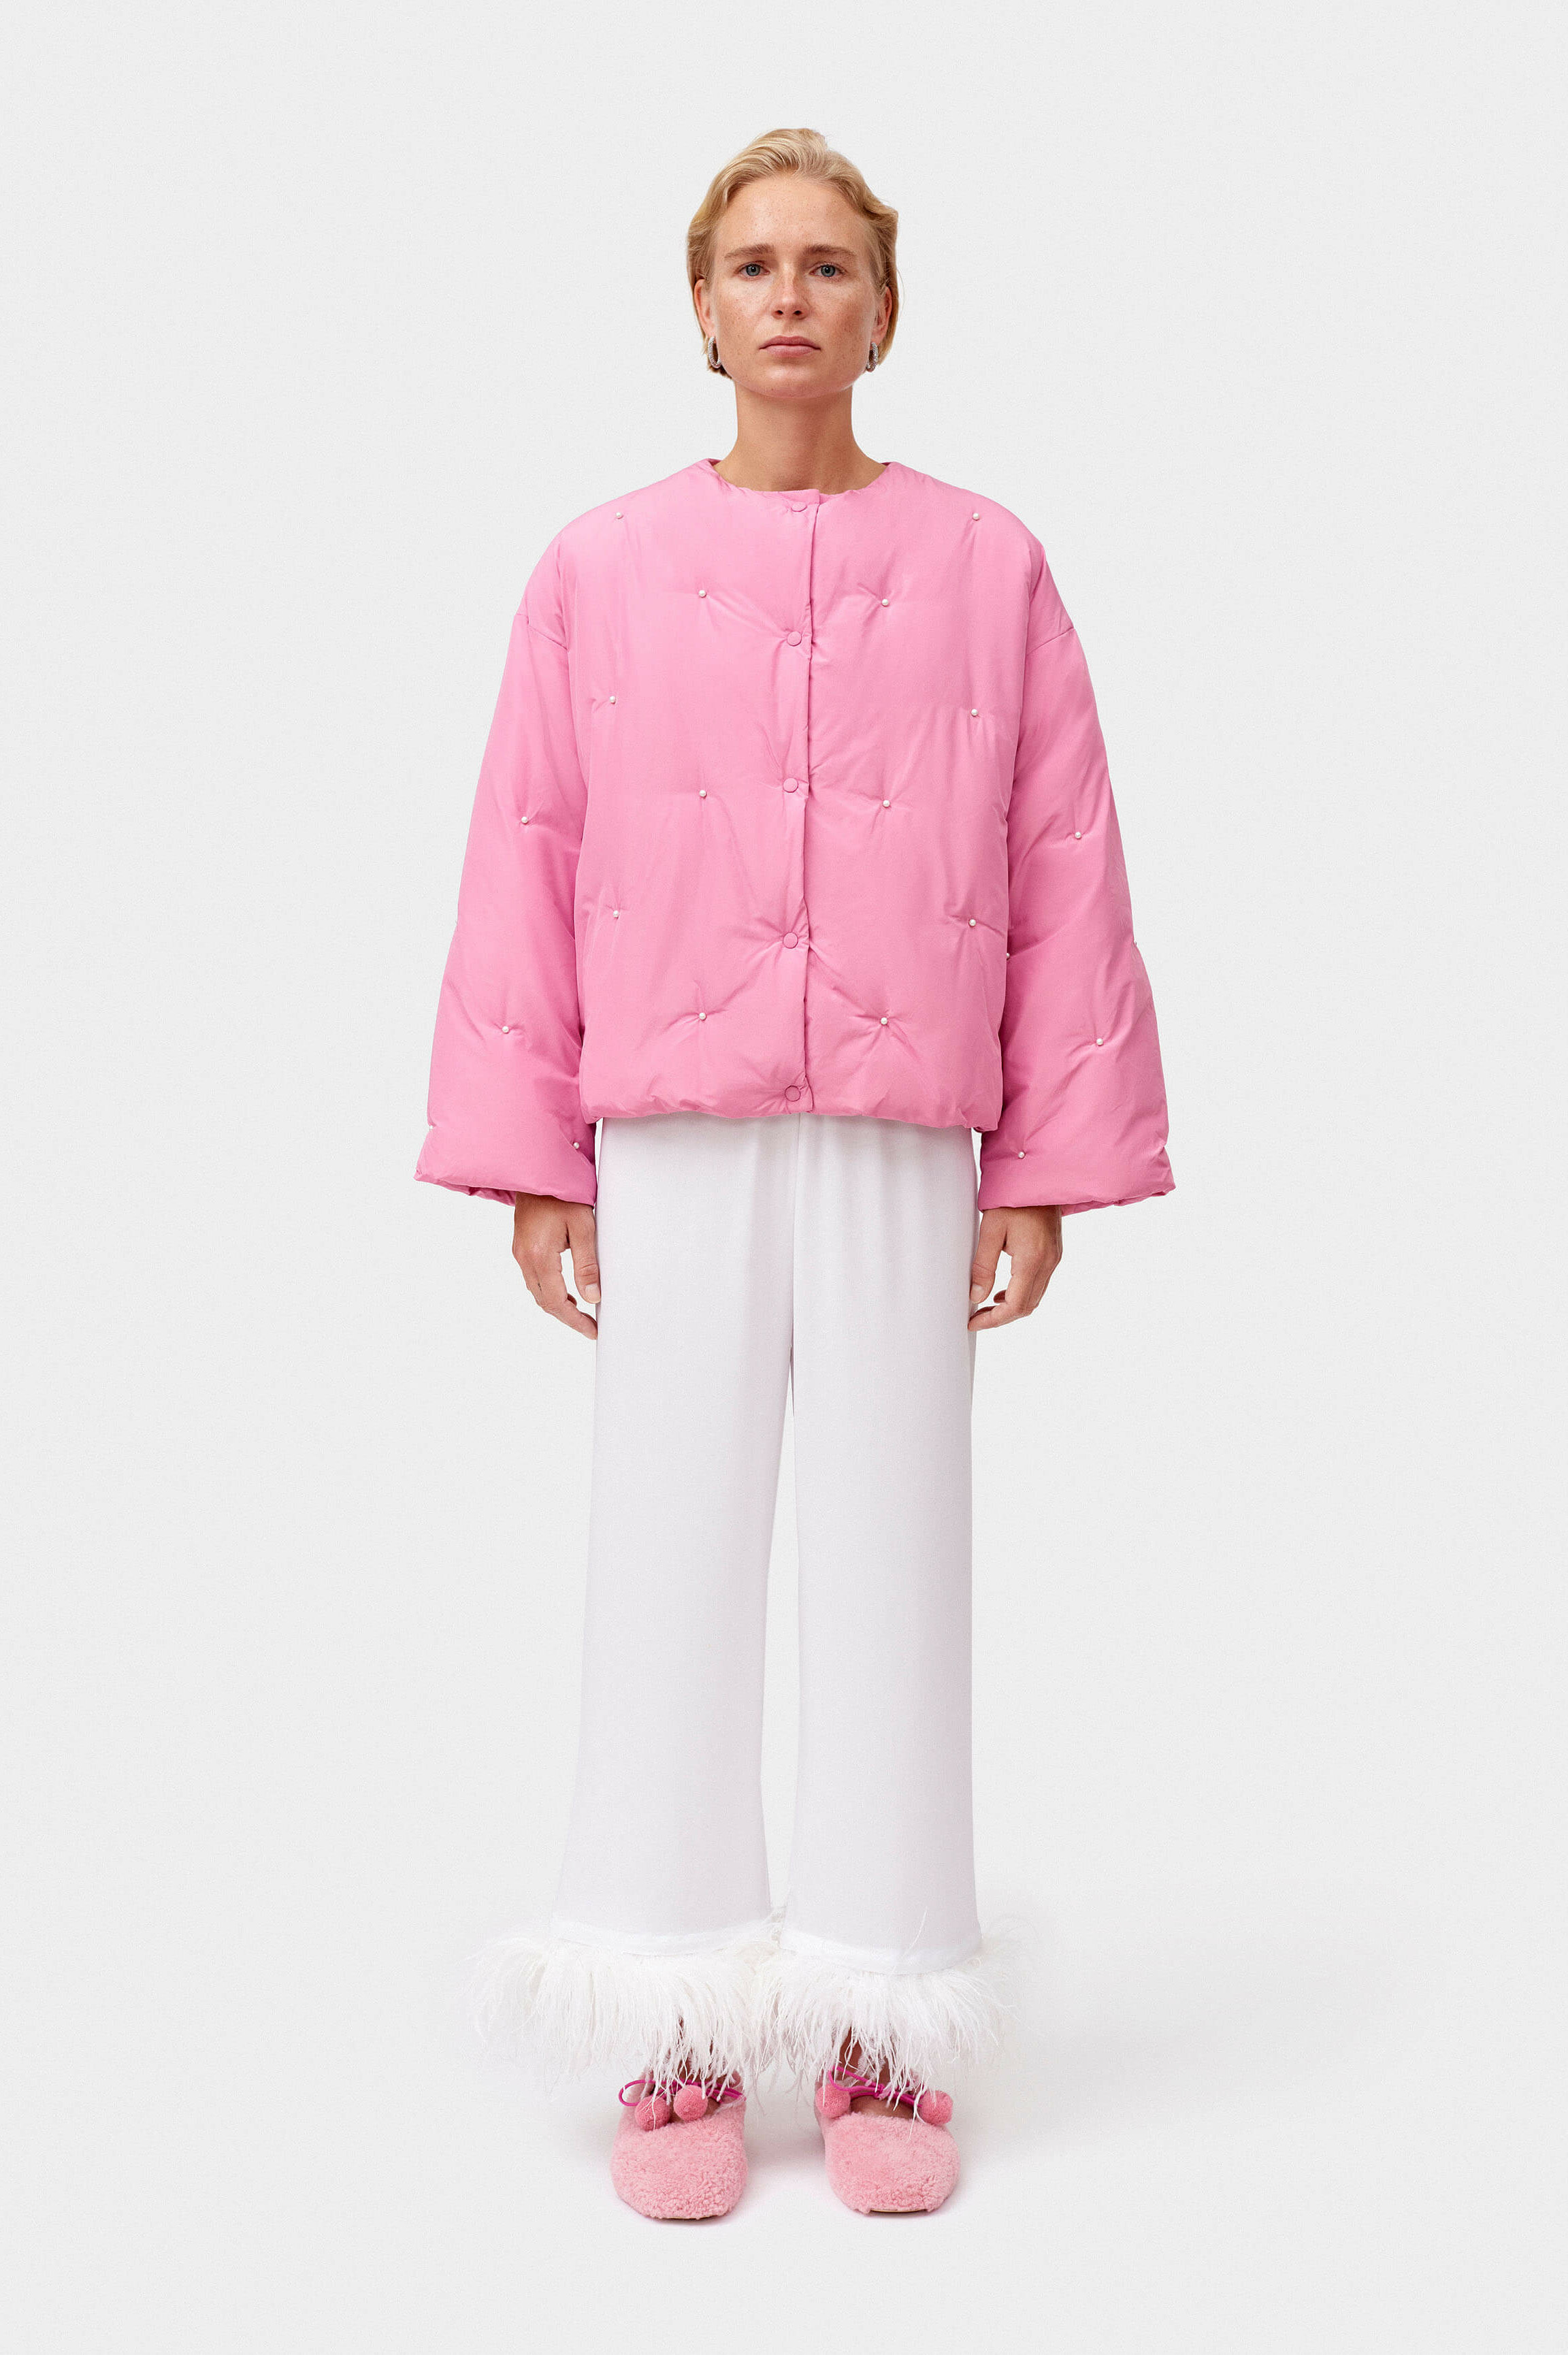 Cropped pink puffer jacket | Women's light pastel pink jacket